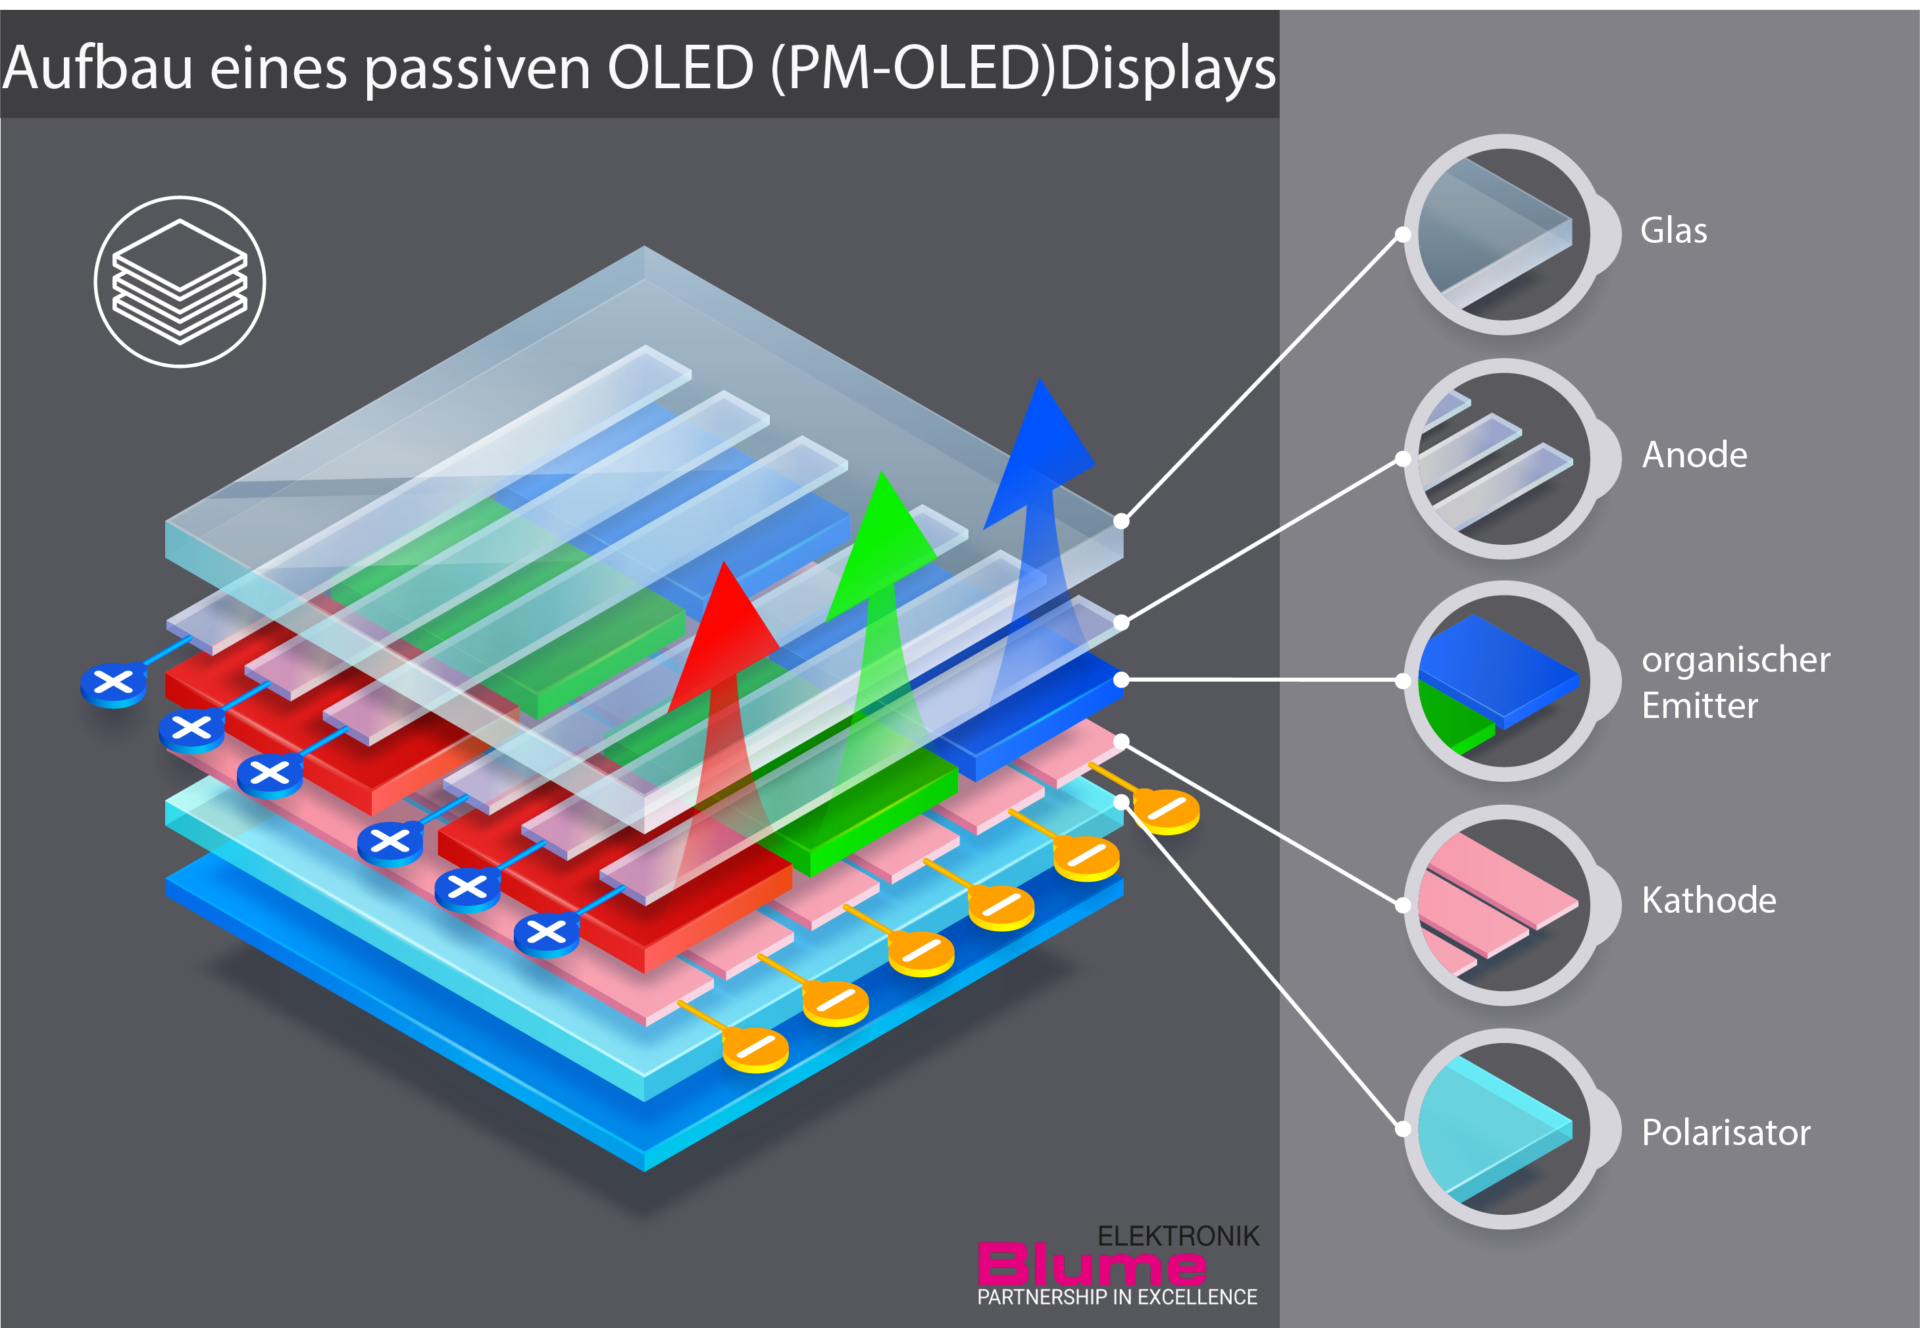 Aufbau eines passiven OLED (PM-OLED) Displays